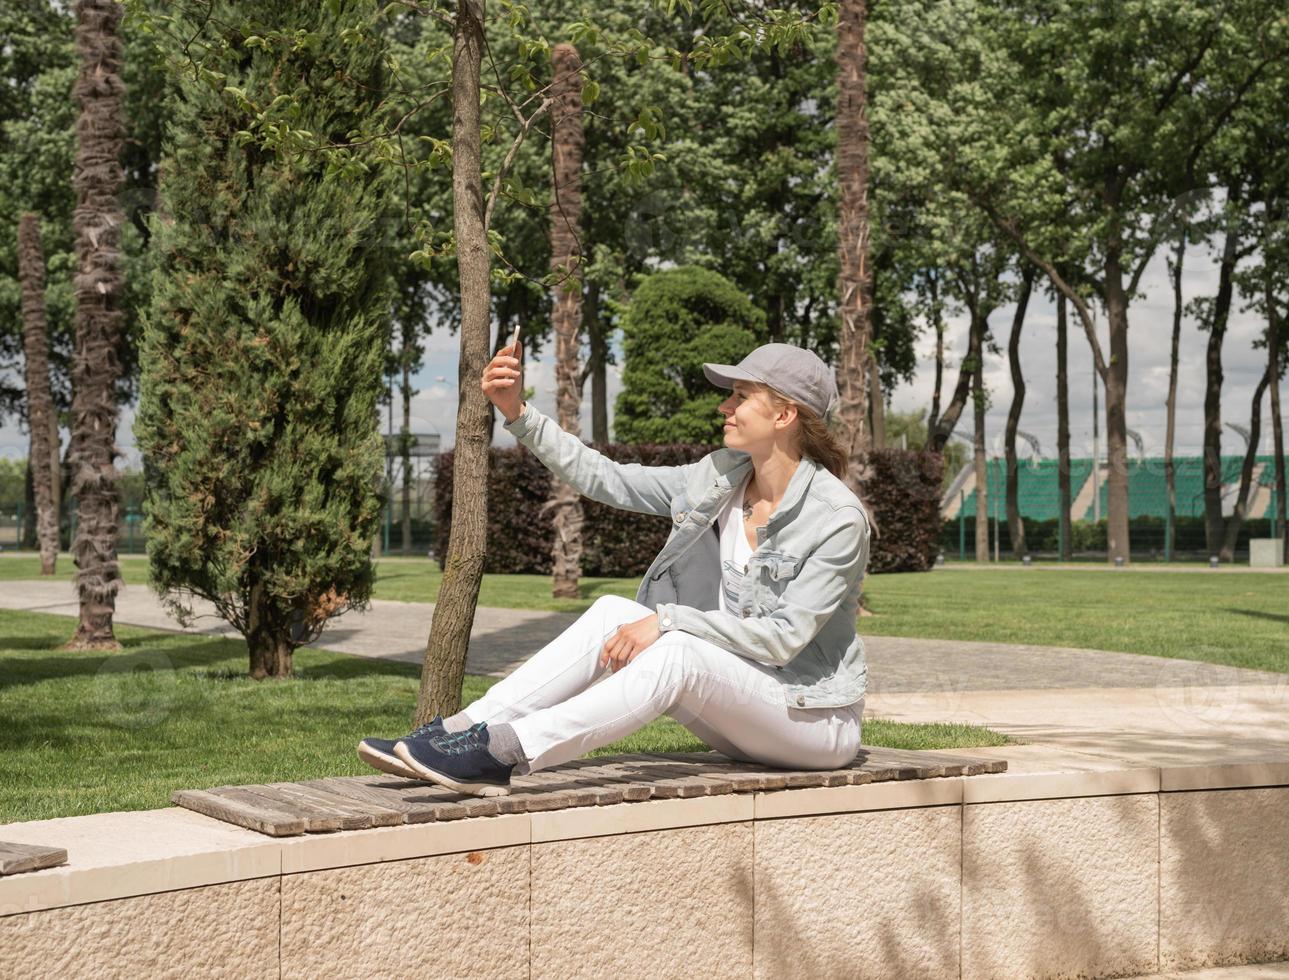 vrouw buitenshuis selfie maken op haar mobiele telefoon foto